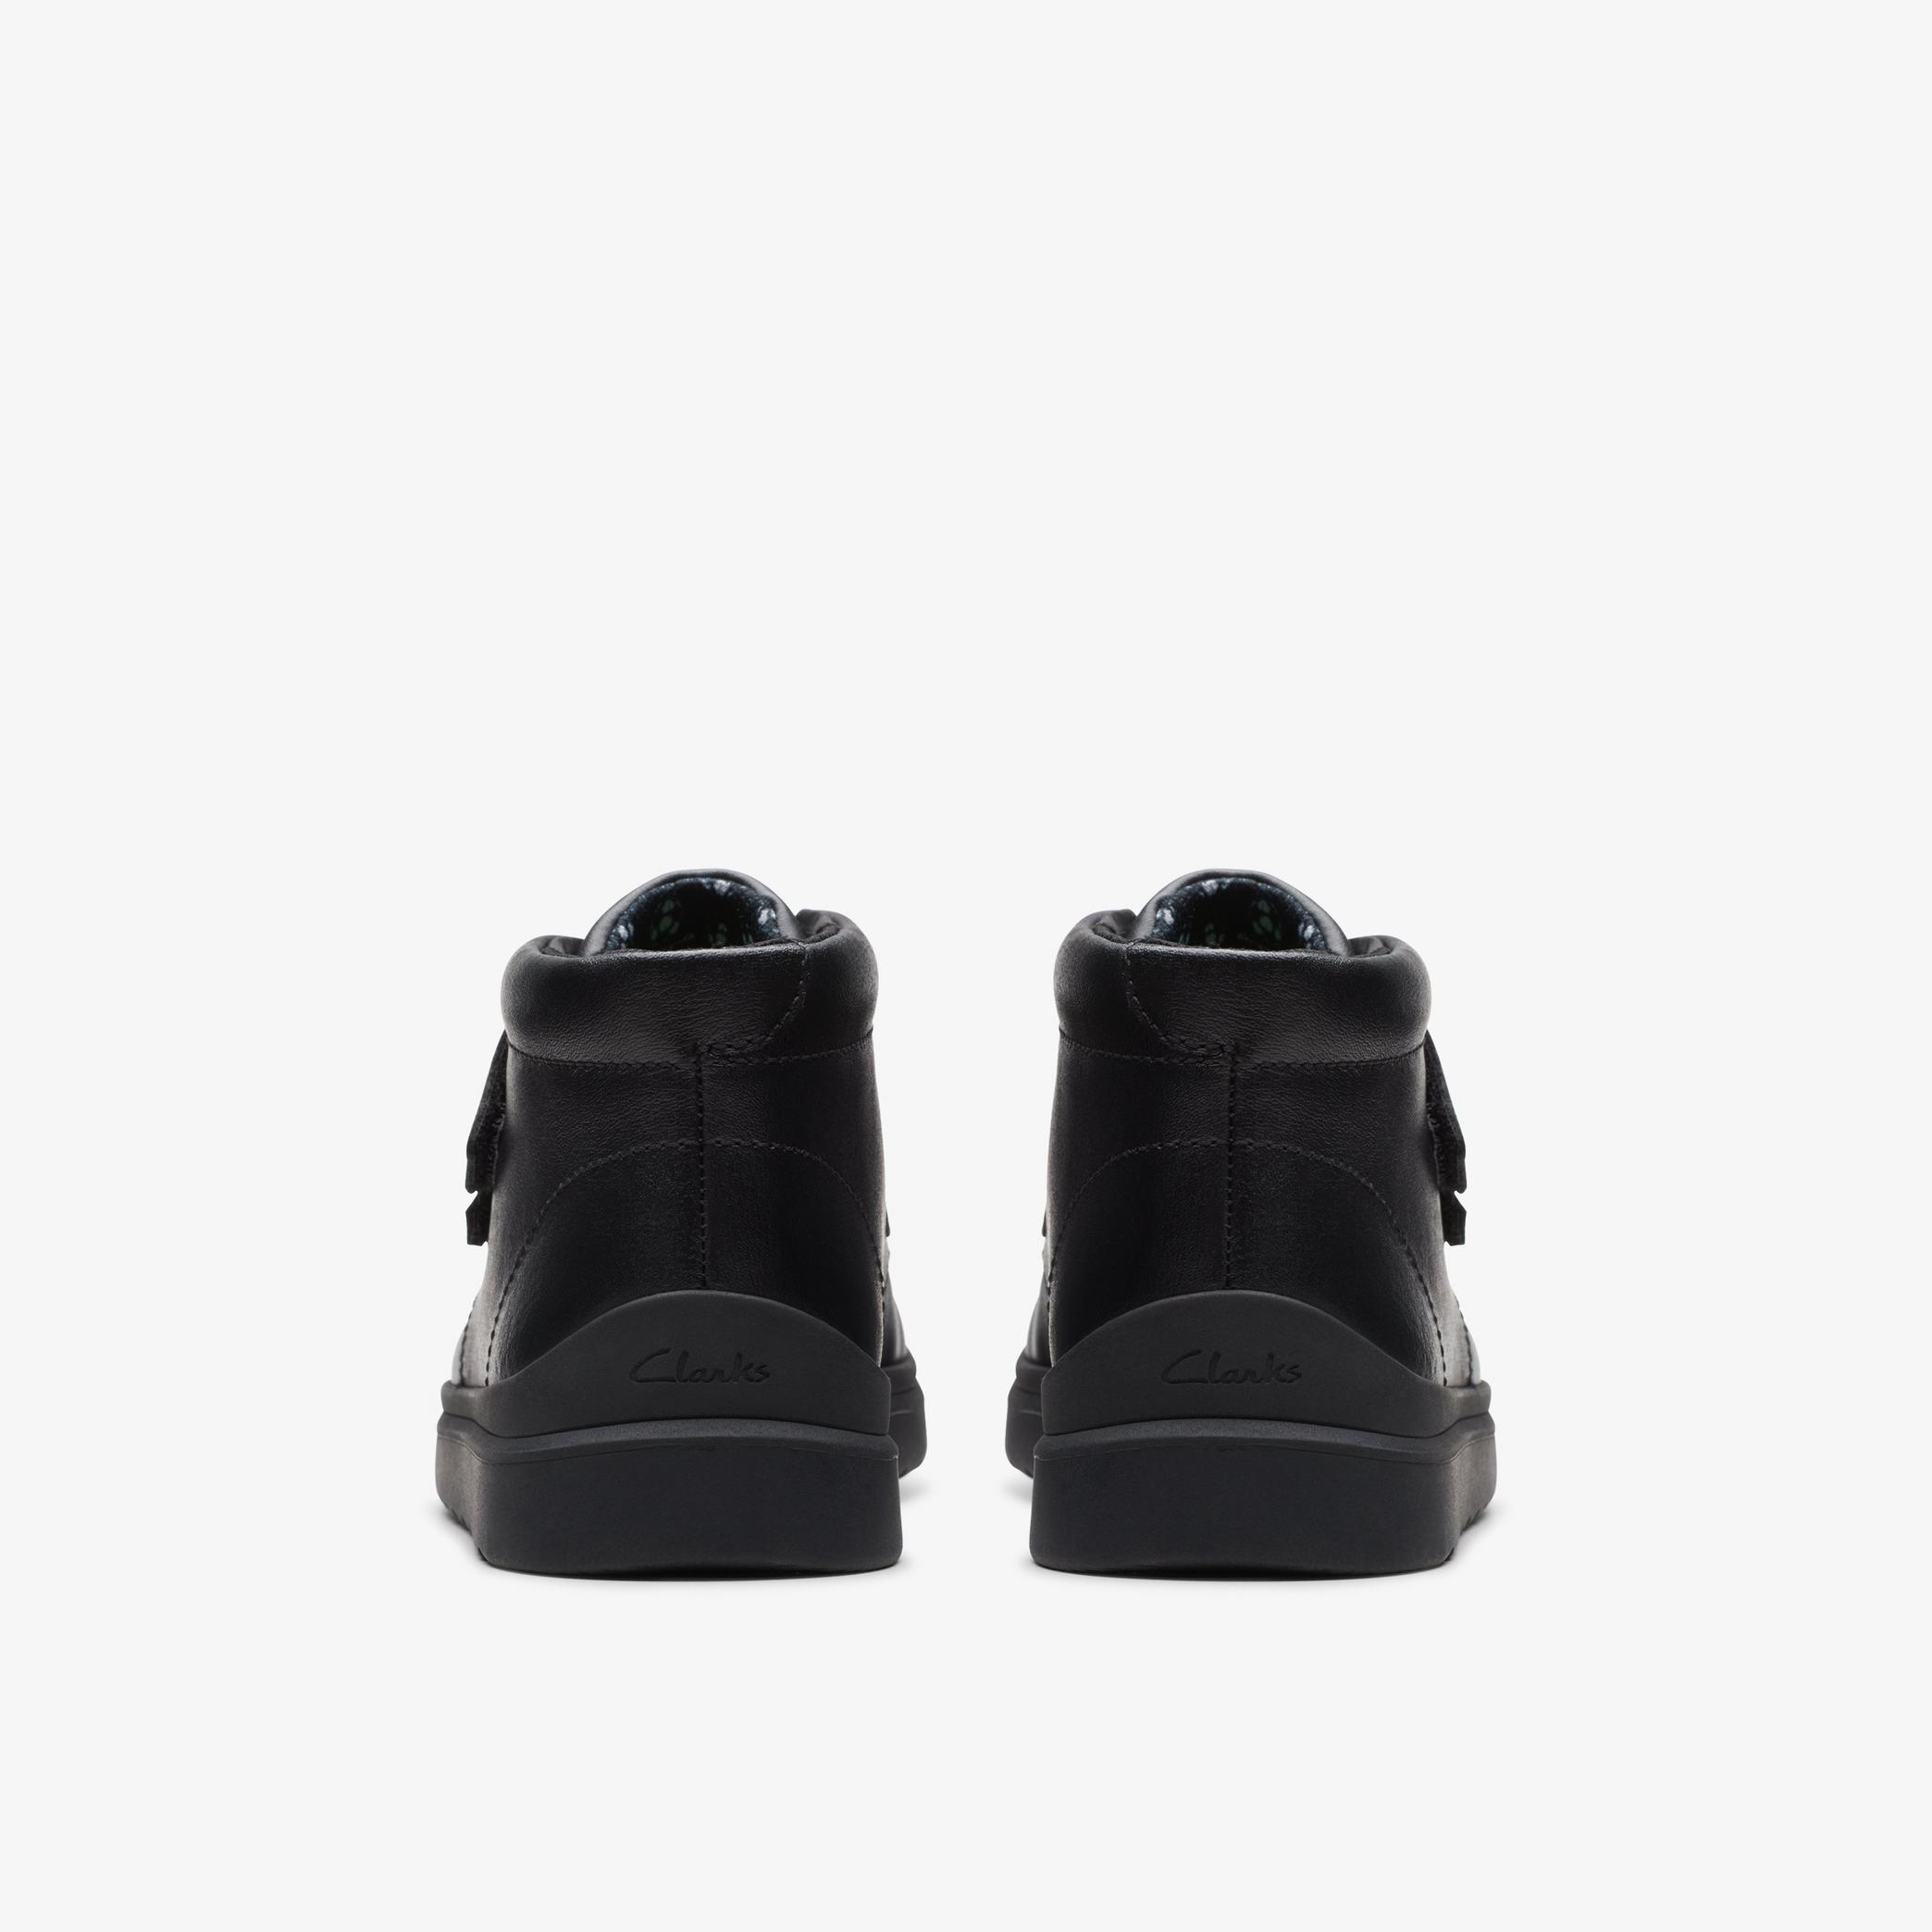 Kids Goal Strap Black Leather Shoes | Clarks UK